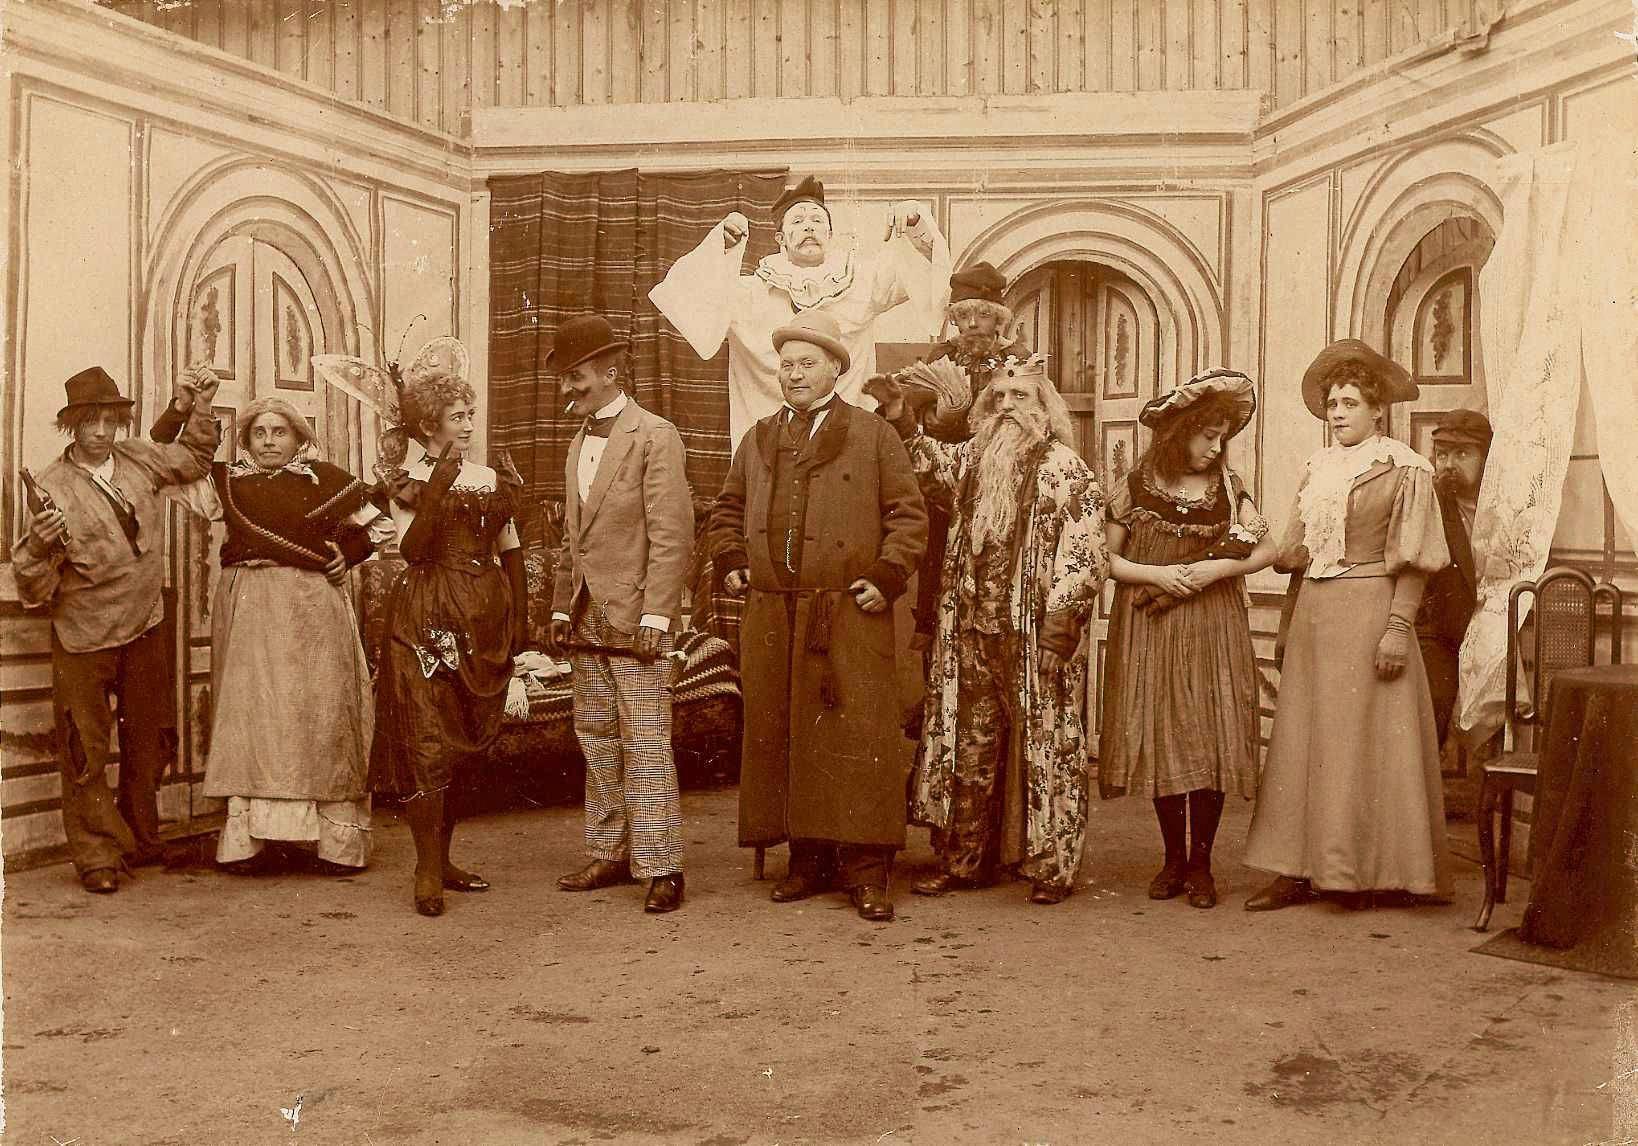 På Olympen ble det drevet teater på 1890-tallet. Her er skuespillerensemblet i kostymer – til hvilket stykke vet vi dessverre ikke.